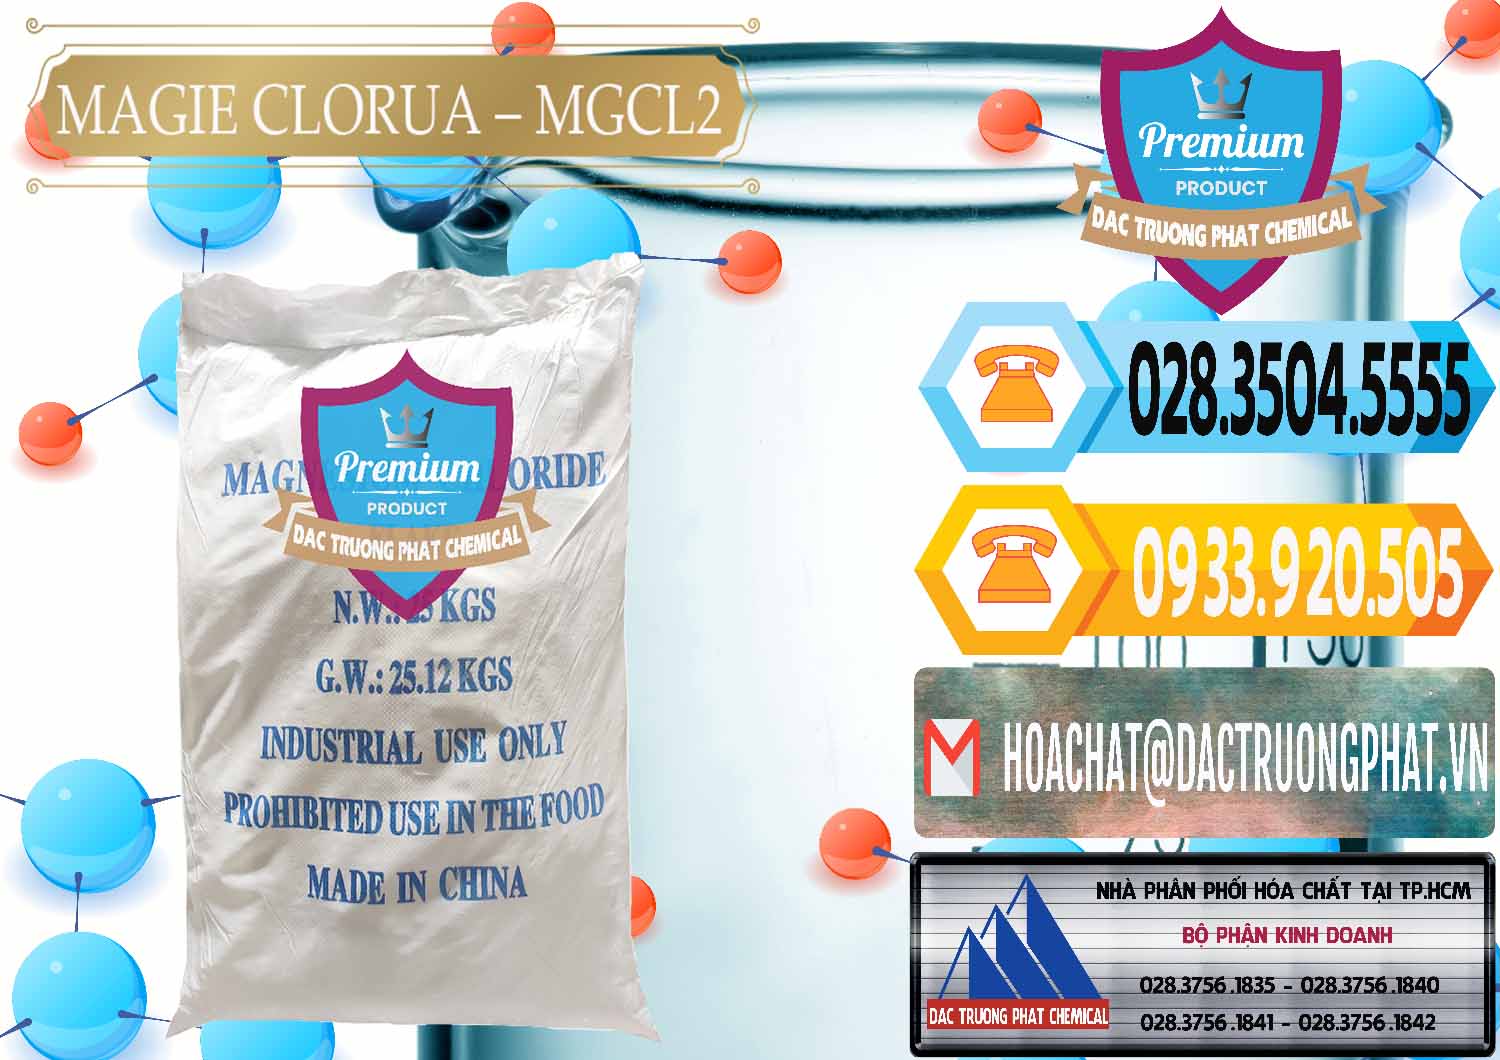 Công ty cung cấp _ bán Magie Clorua – MGCL2 96% Dạng Vảy Trung Quốc China - 0091 - Nơi phân phối & bán hóa chất tại TP.HCM - hoachattayrua.net